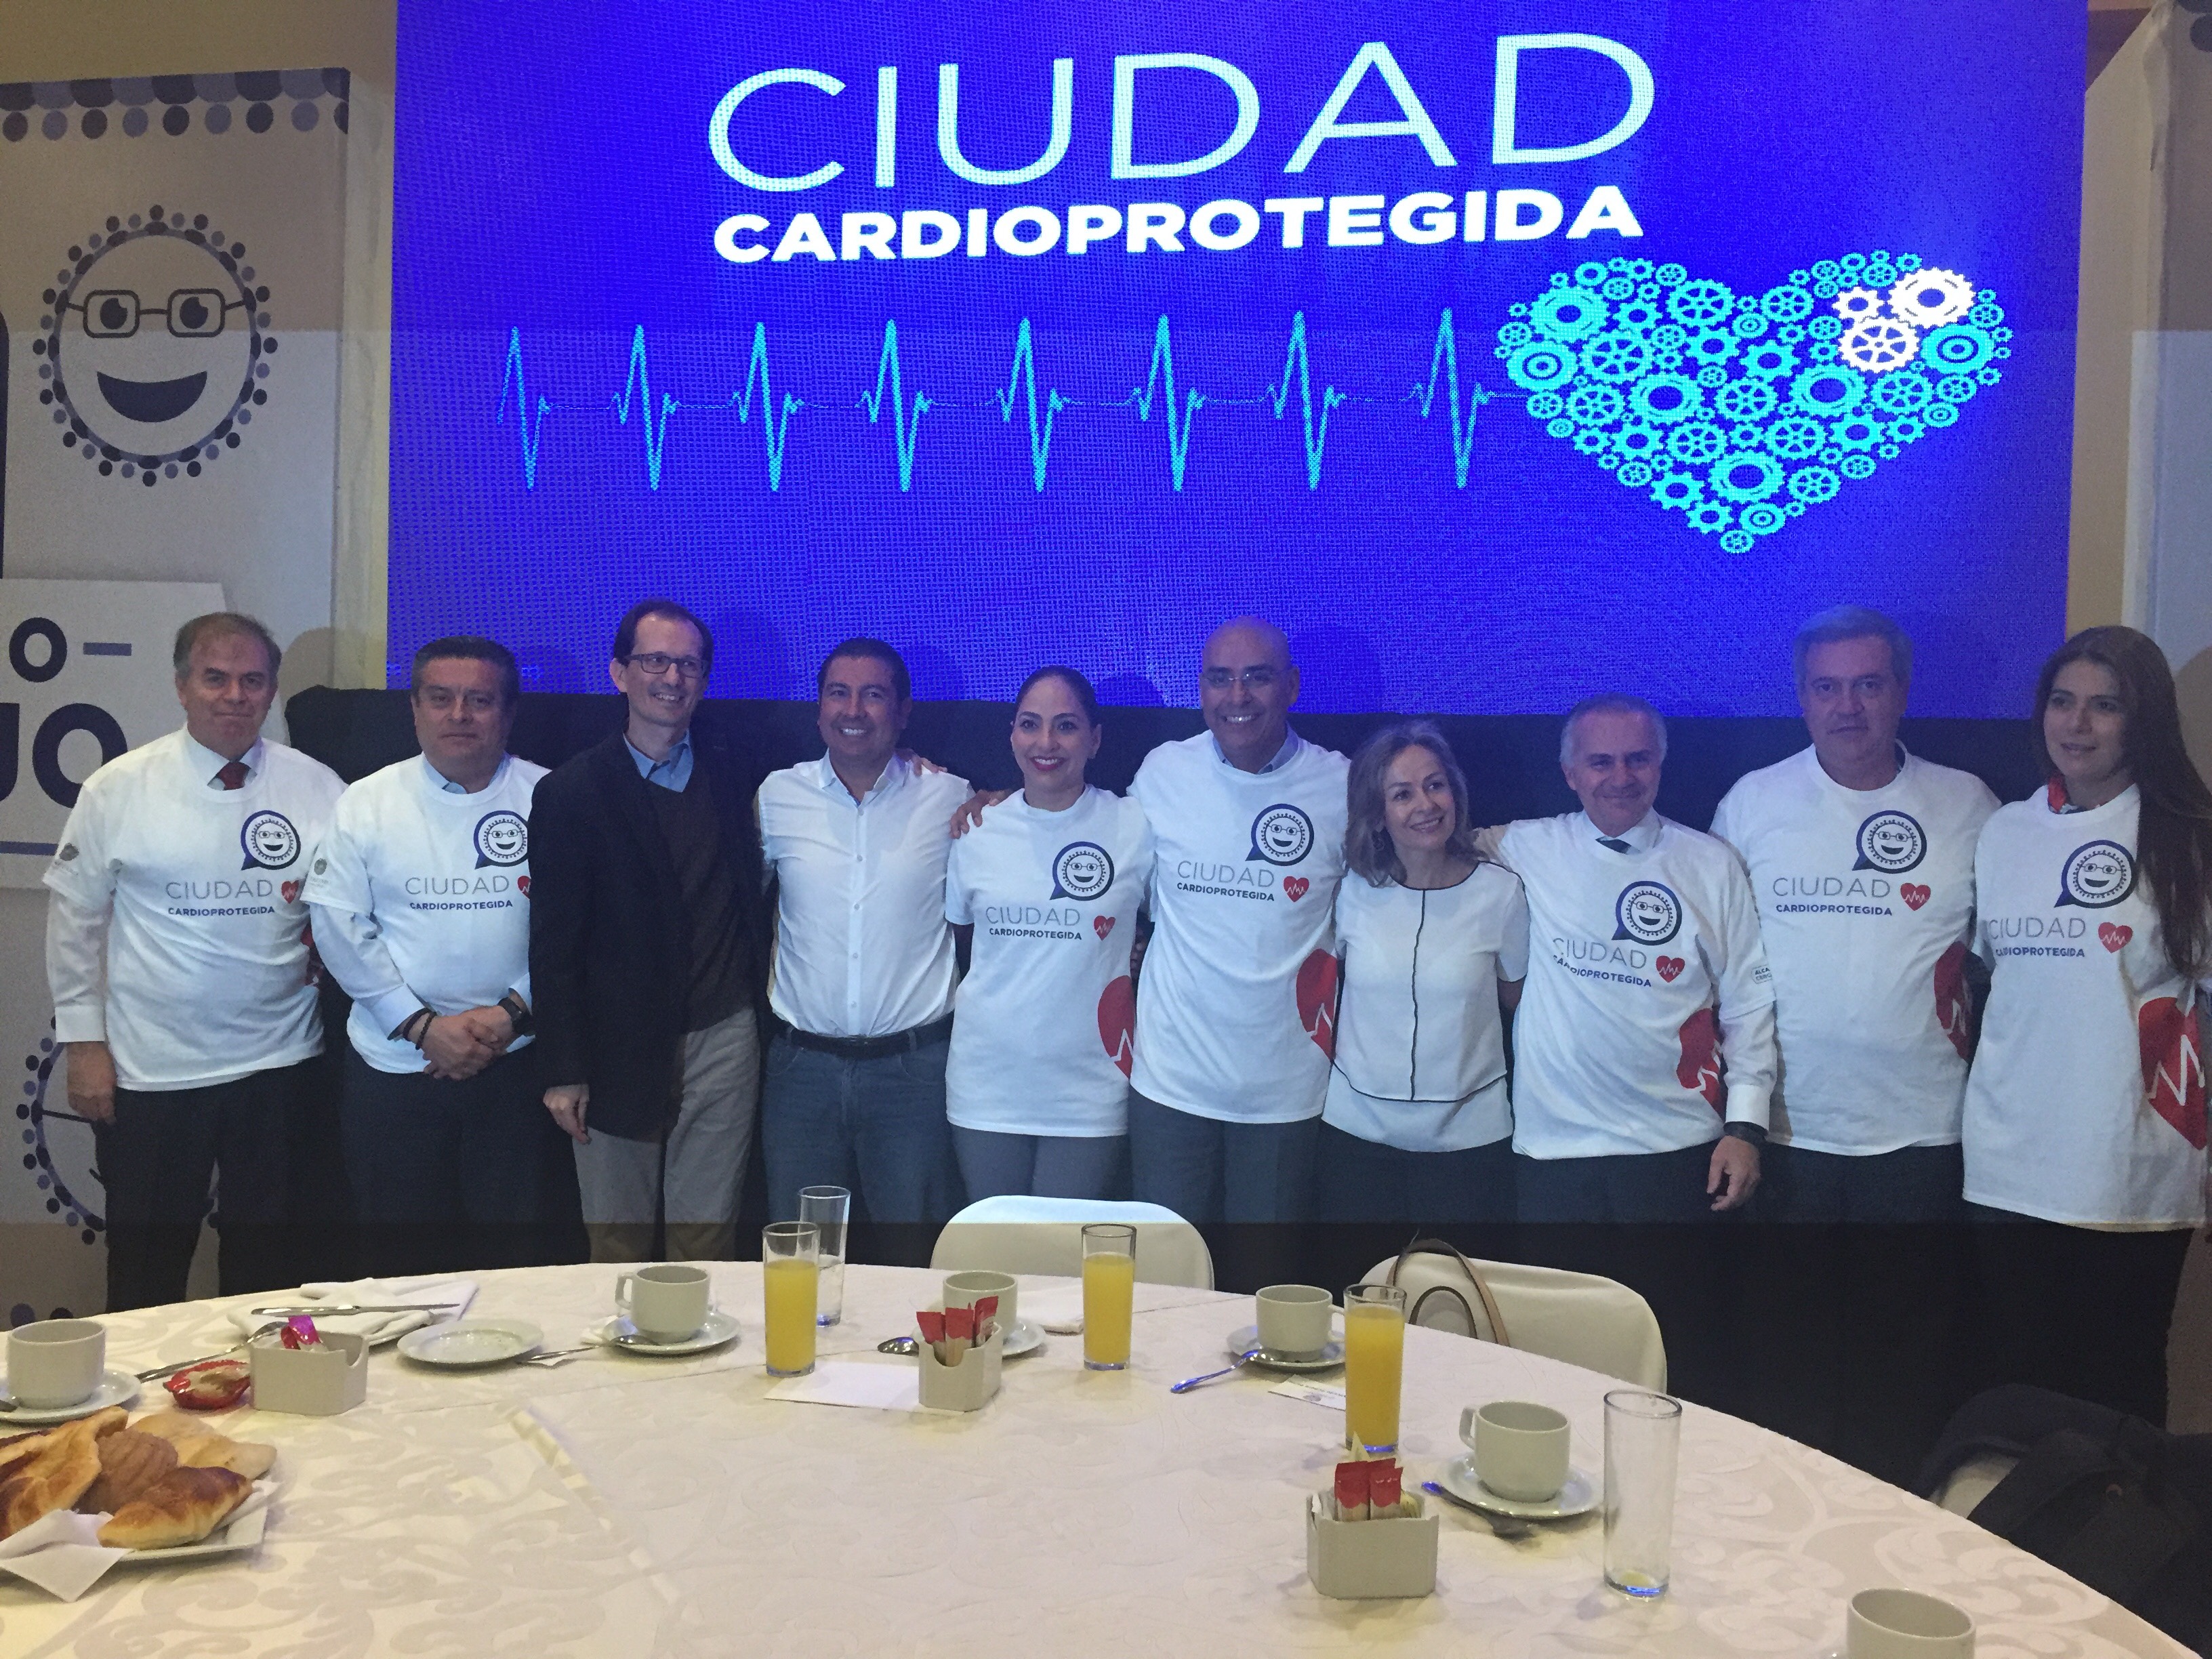  Municipio de Querétaro desarrolla programa para prevenir paros cardíacos